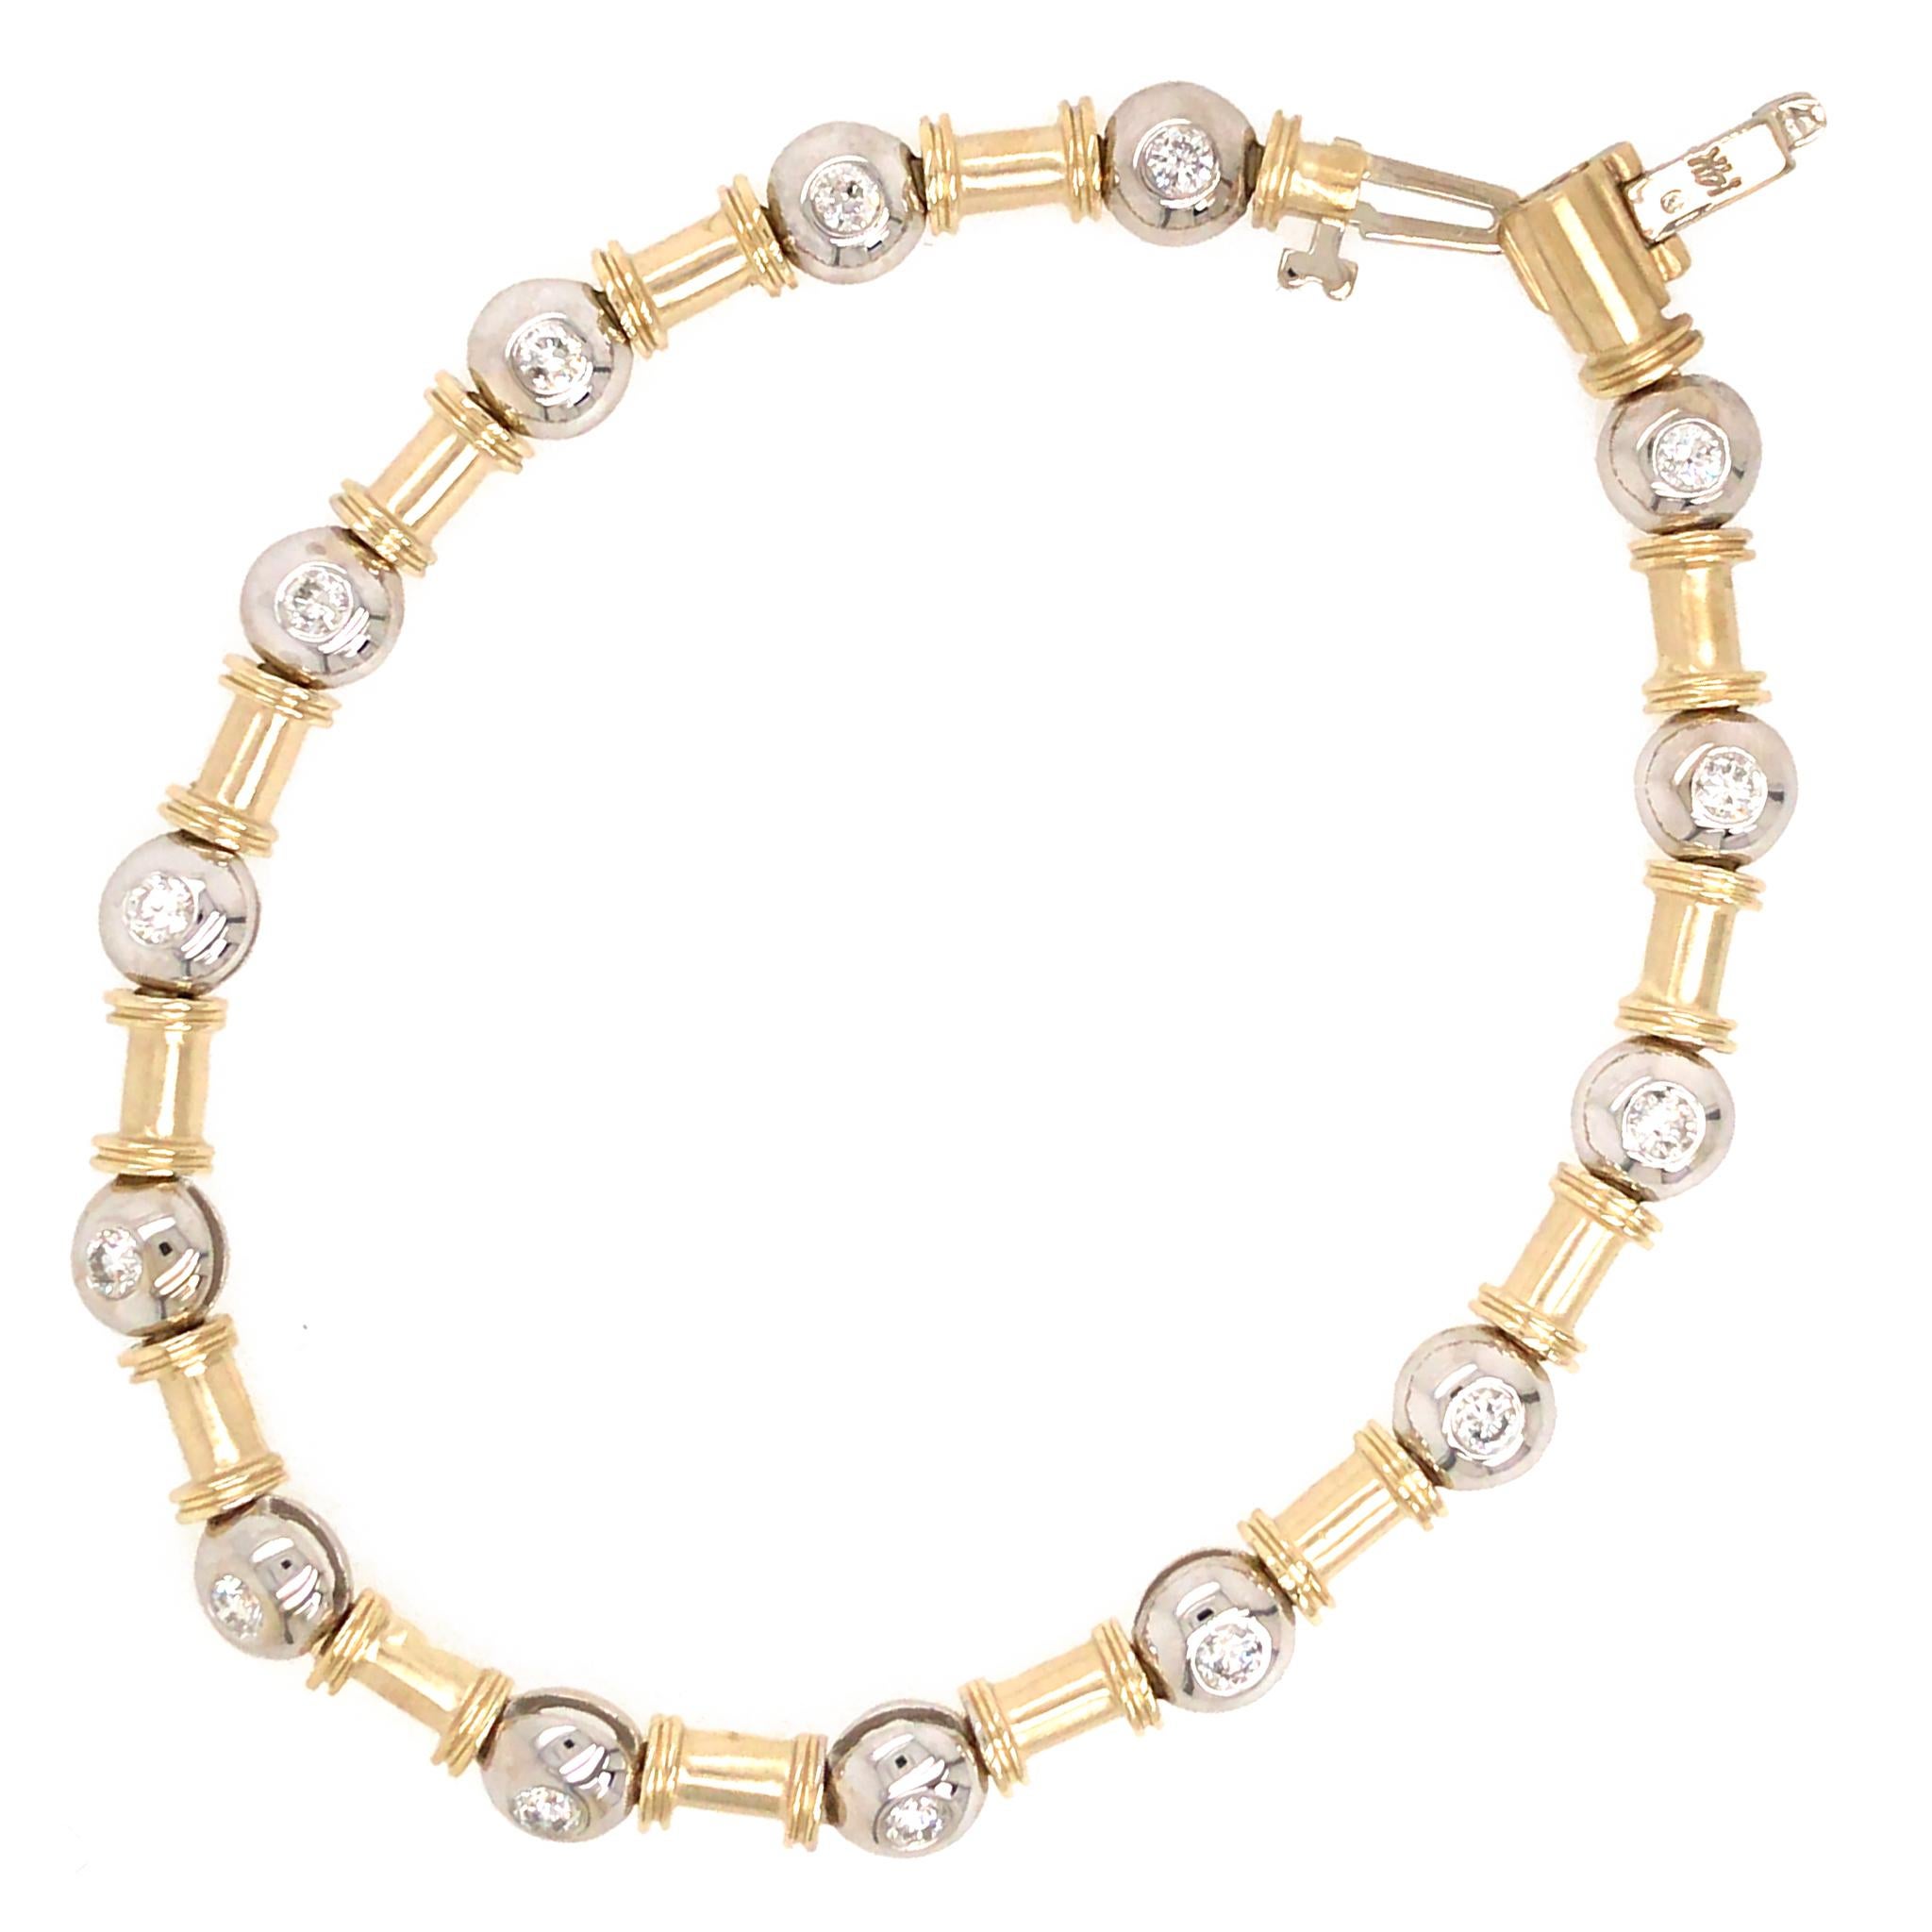 Or jaune 14k et or blanc 14k
Diamant : 0,56 ct twd (estimé)
Poids total : 15,5 grammes
Longueur du bracelet : 7 pouces